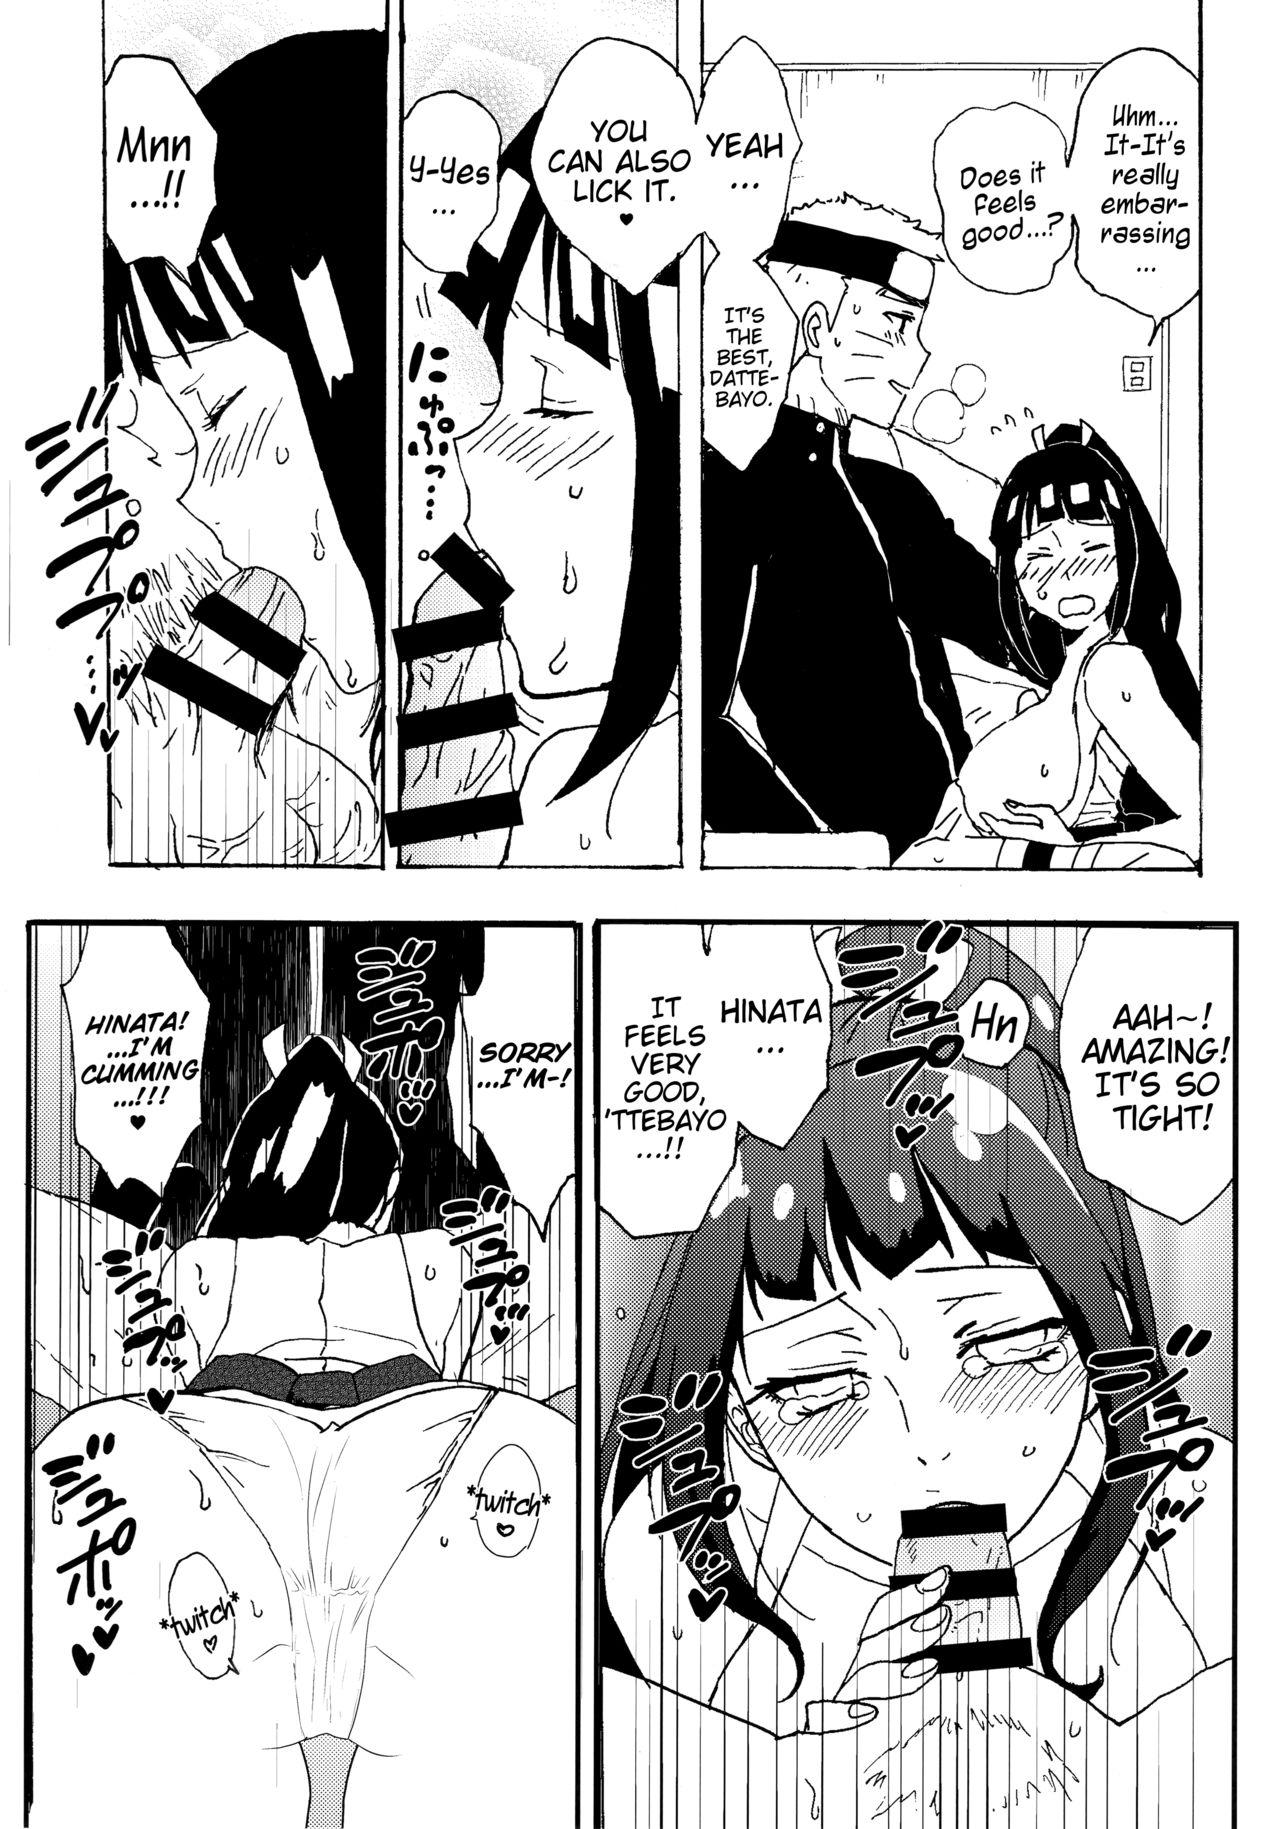 Stud Shinkon Hinata no Kunoichi Cosplay dattebayo! | Newlywed Hinata's kunoichi cosplay, dattebayo! - Naruto Step Mom - Page 8